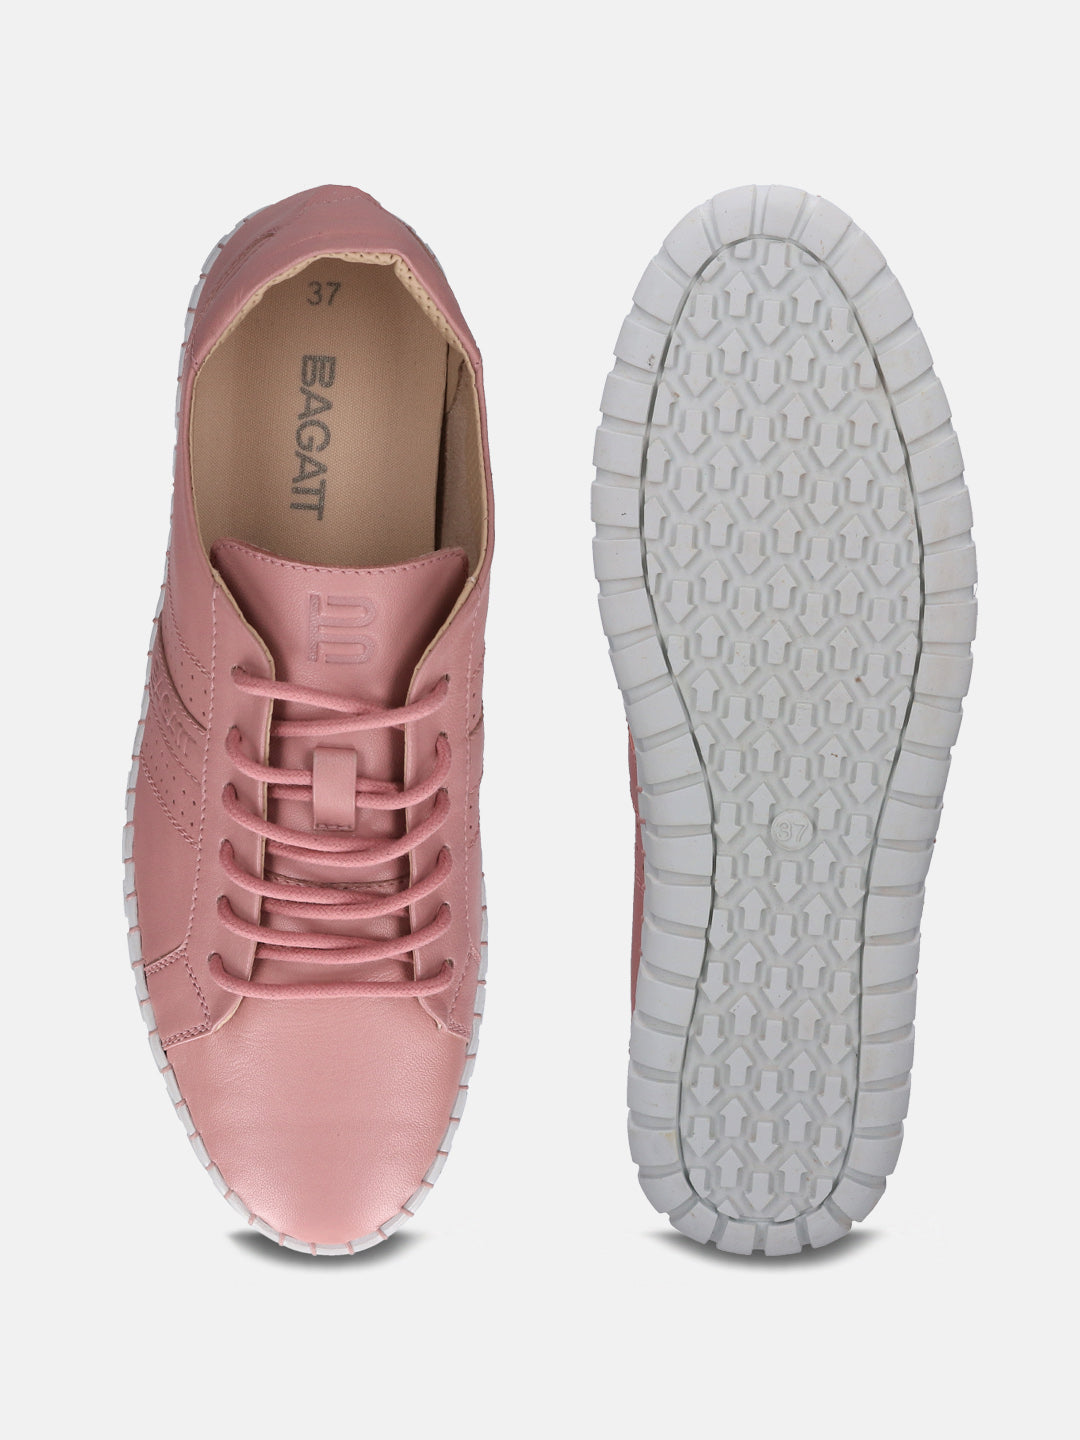 Bali Pink Sneakers - BAGATT